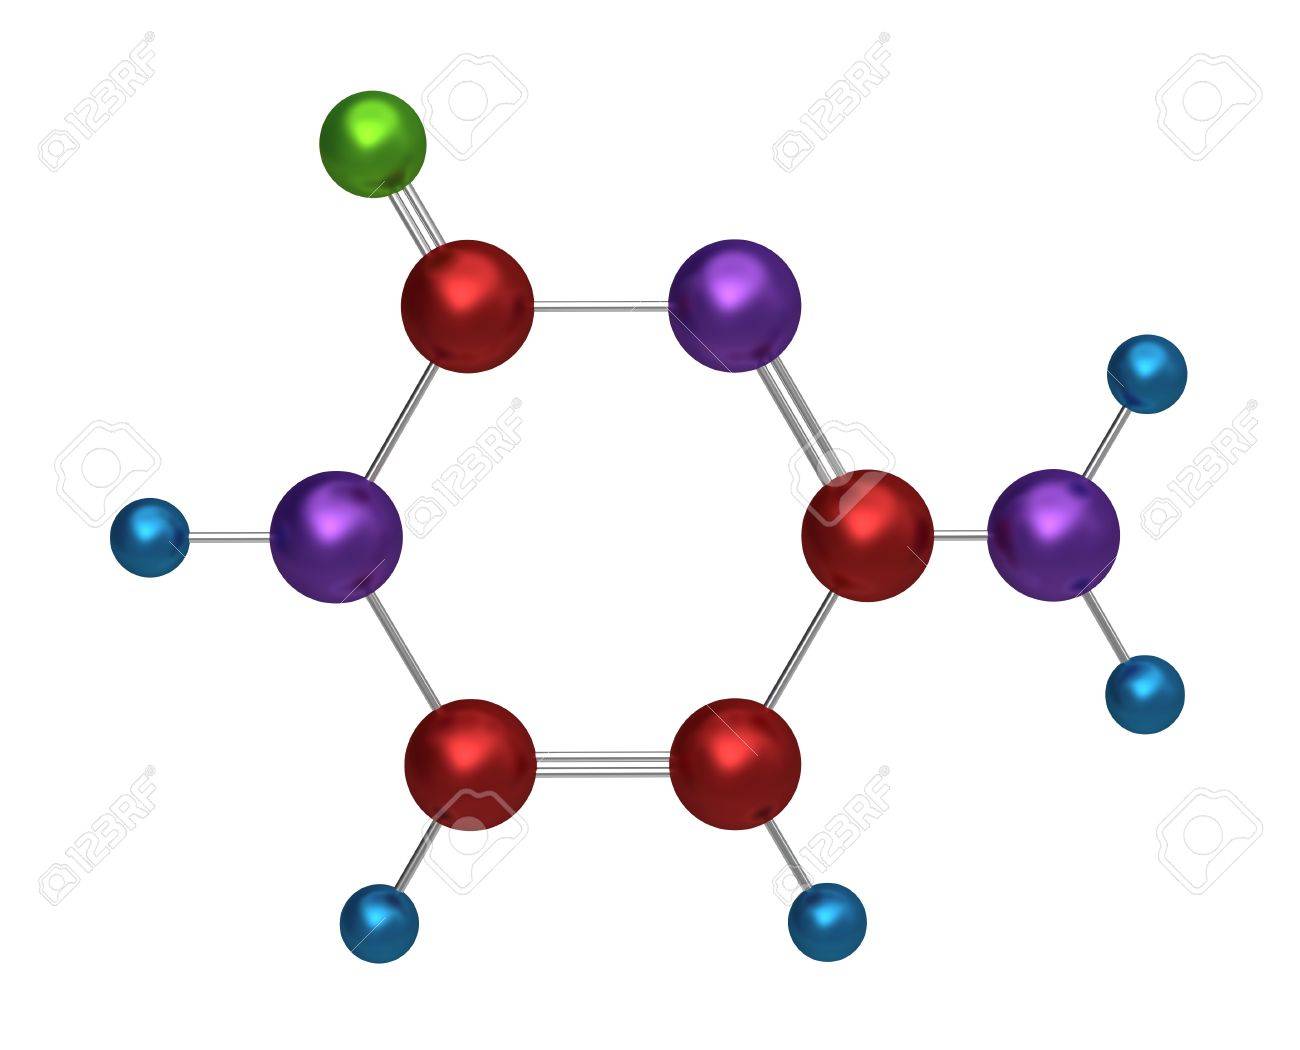 Moléculas